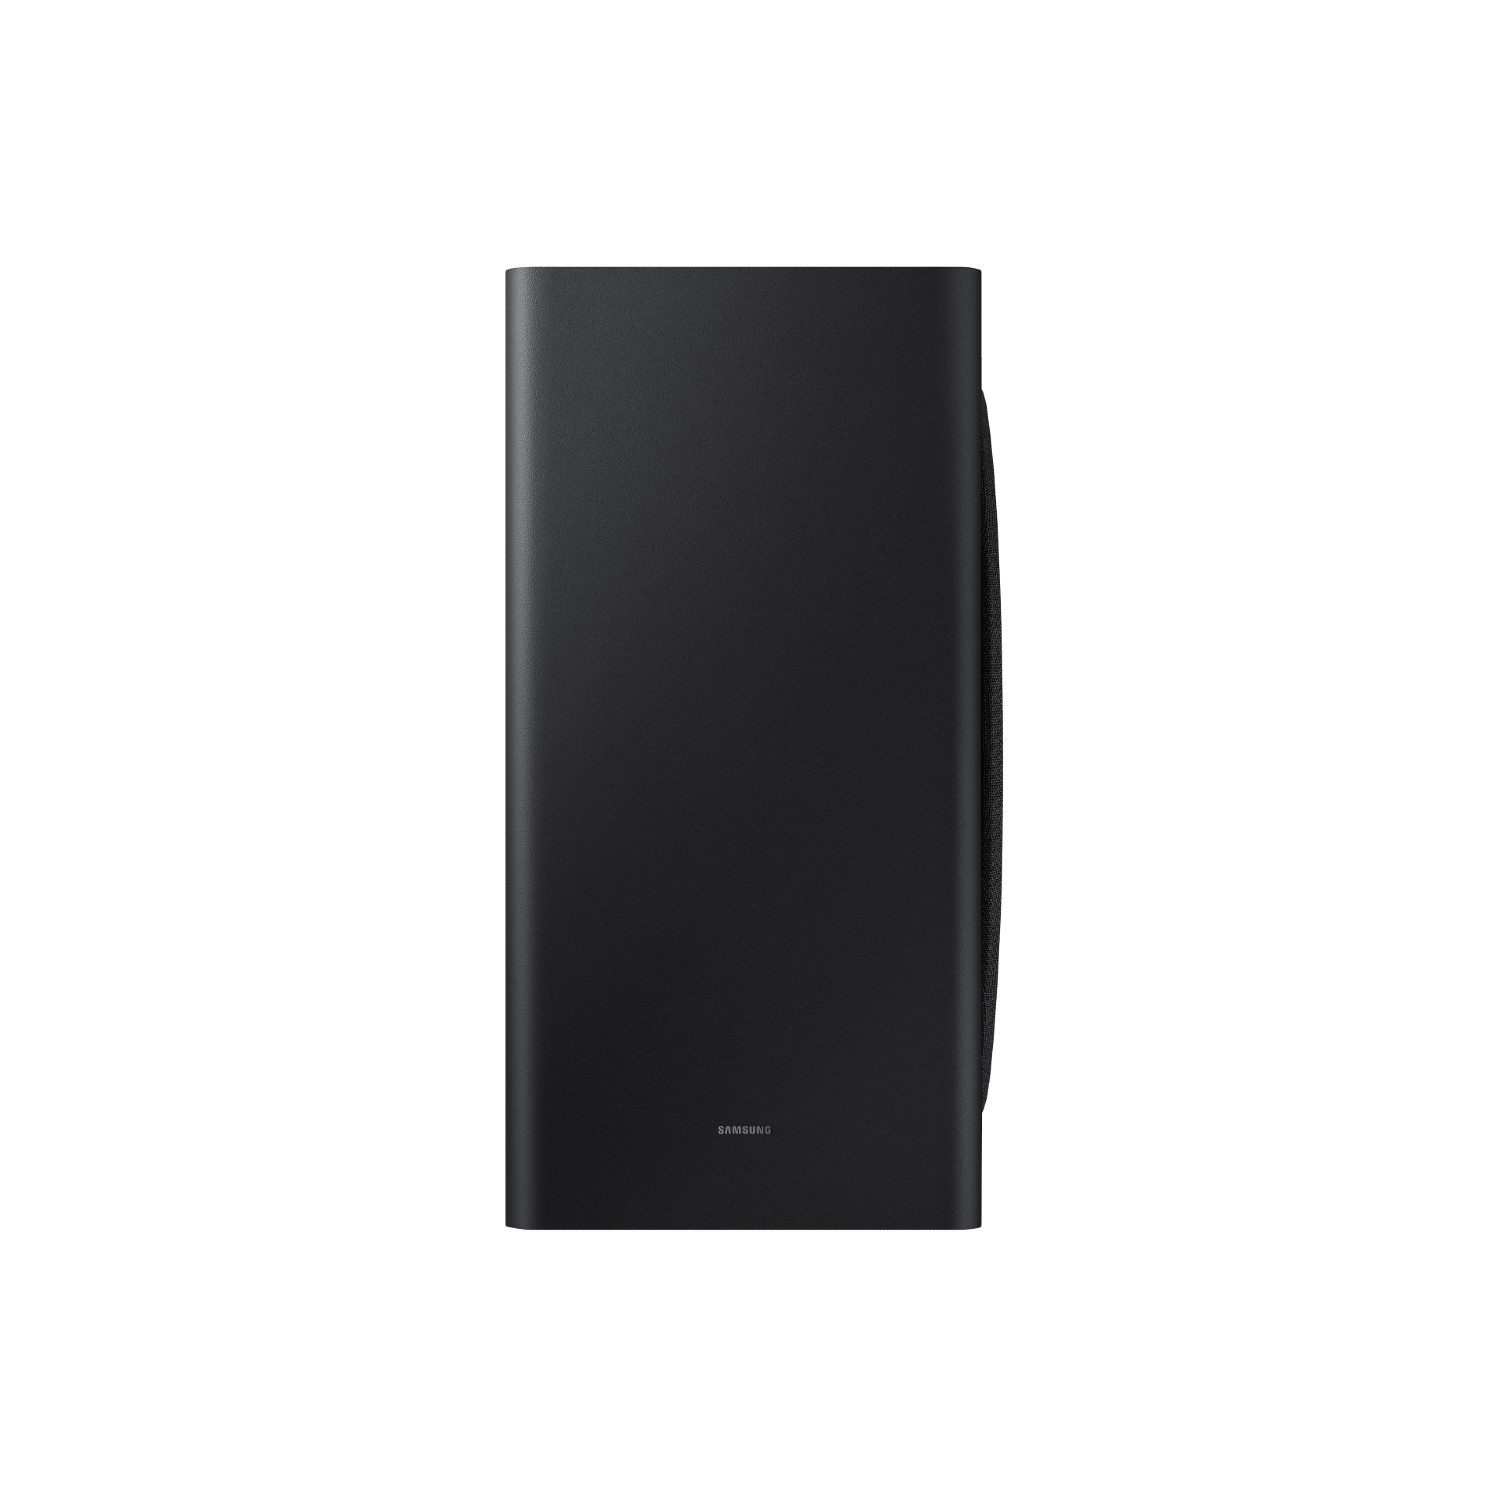 Samsung HW_Q900AXU 7.1.2ch Soundbar + Subwoofer - Black - 5